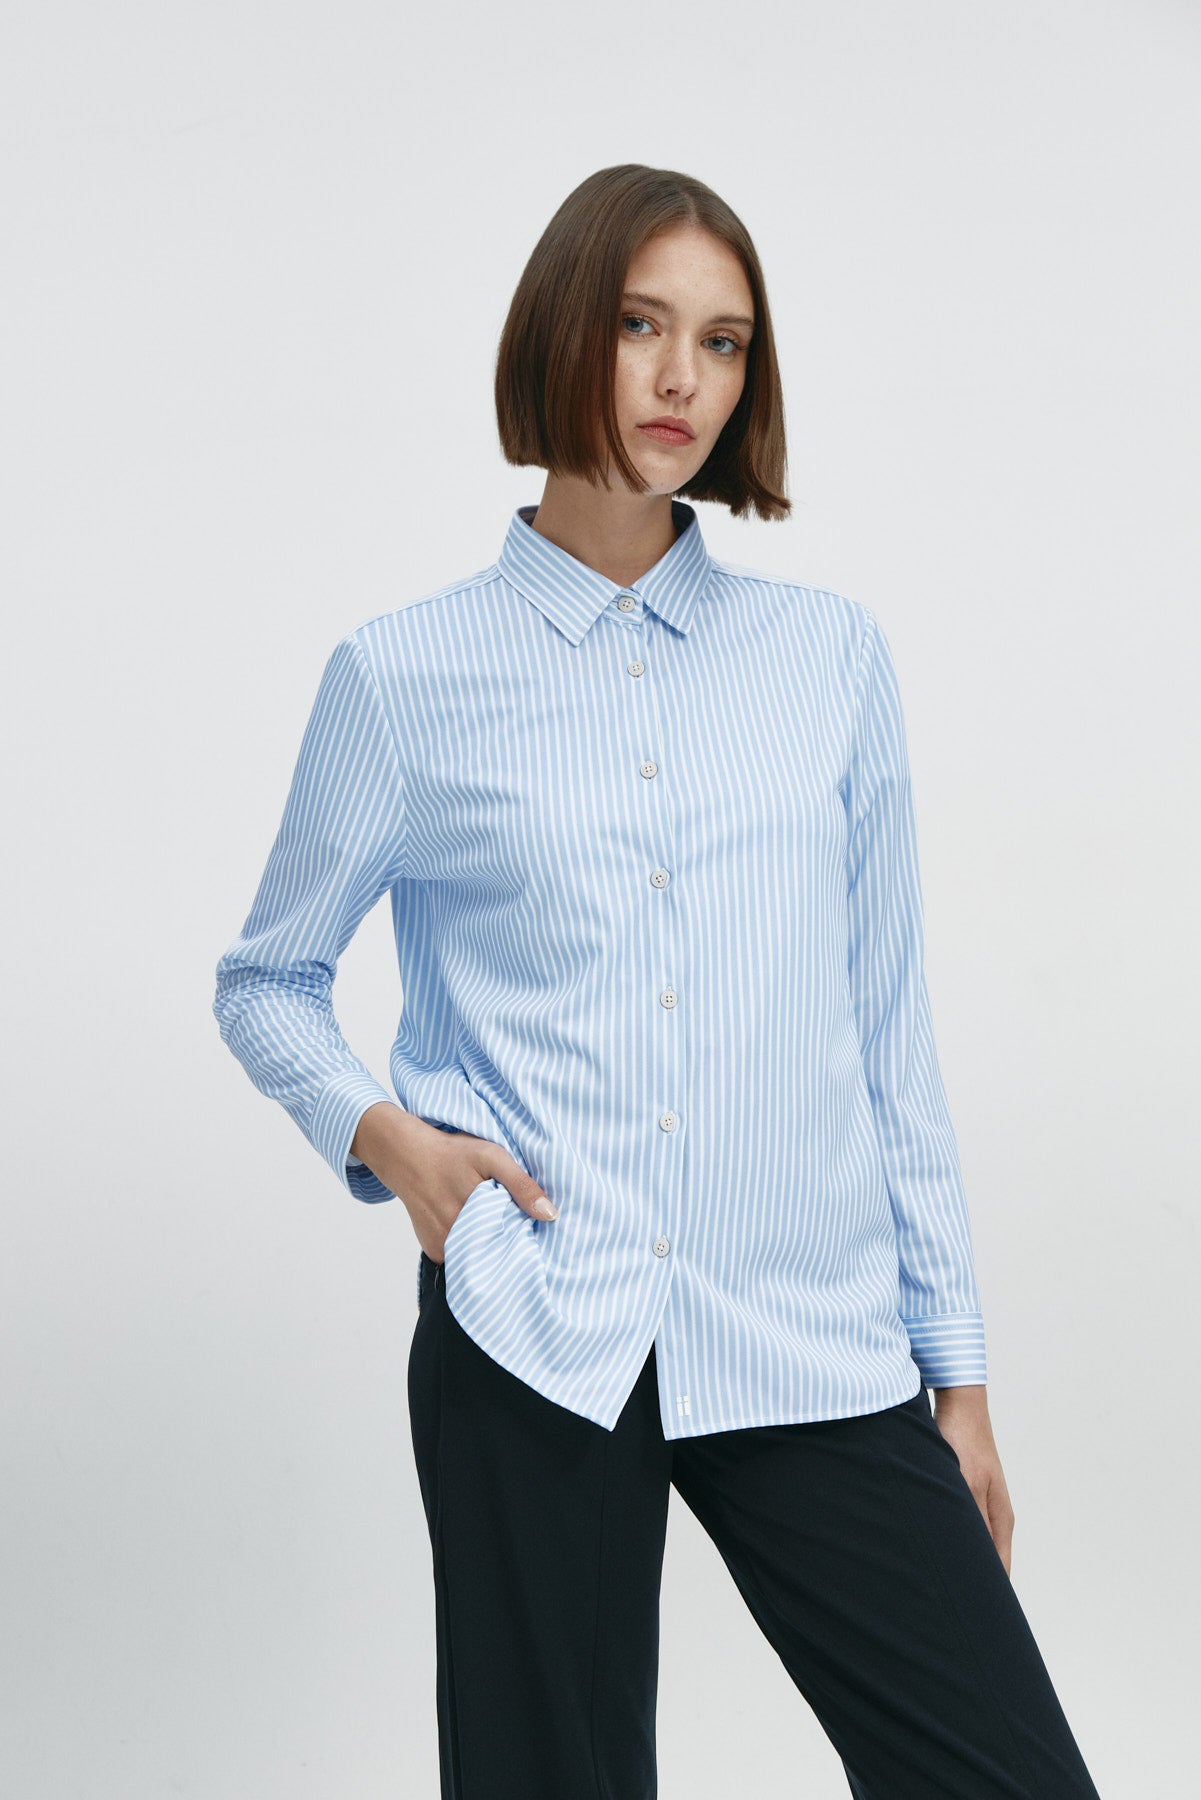 Camisa rayas azules oversize de Sepiia, elegante y resistente a manchas y arrugas. Foto frente